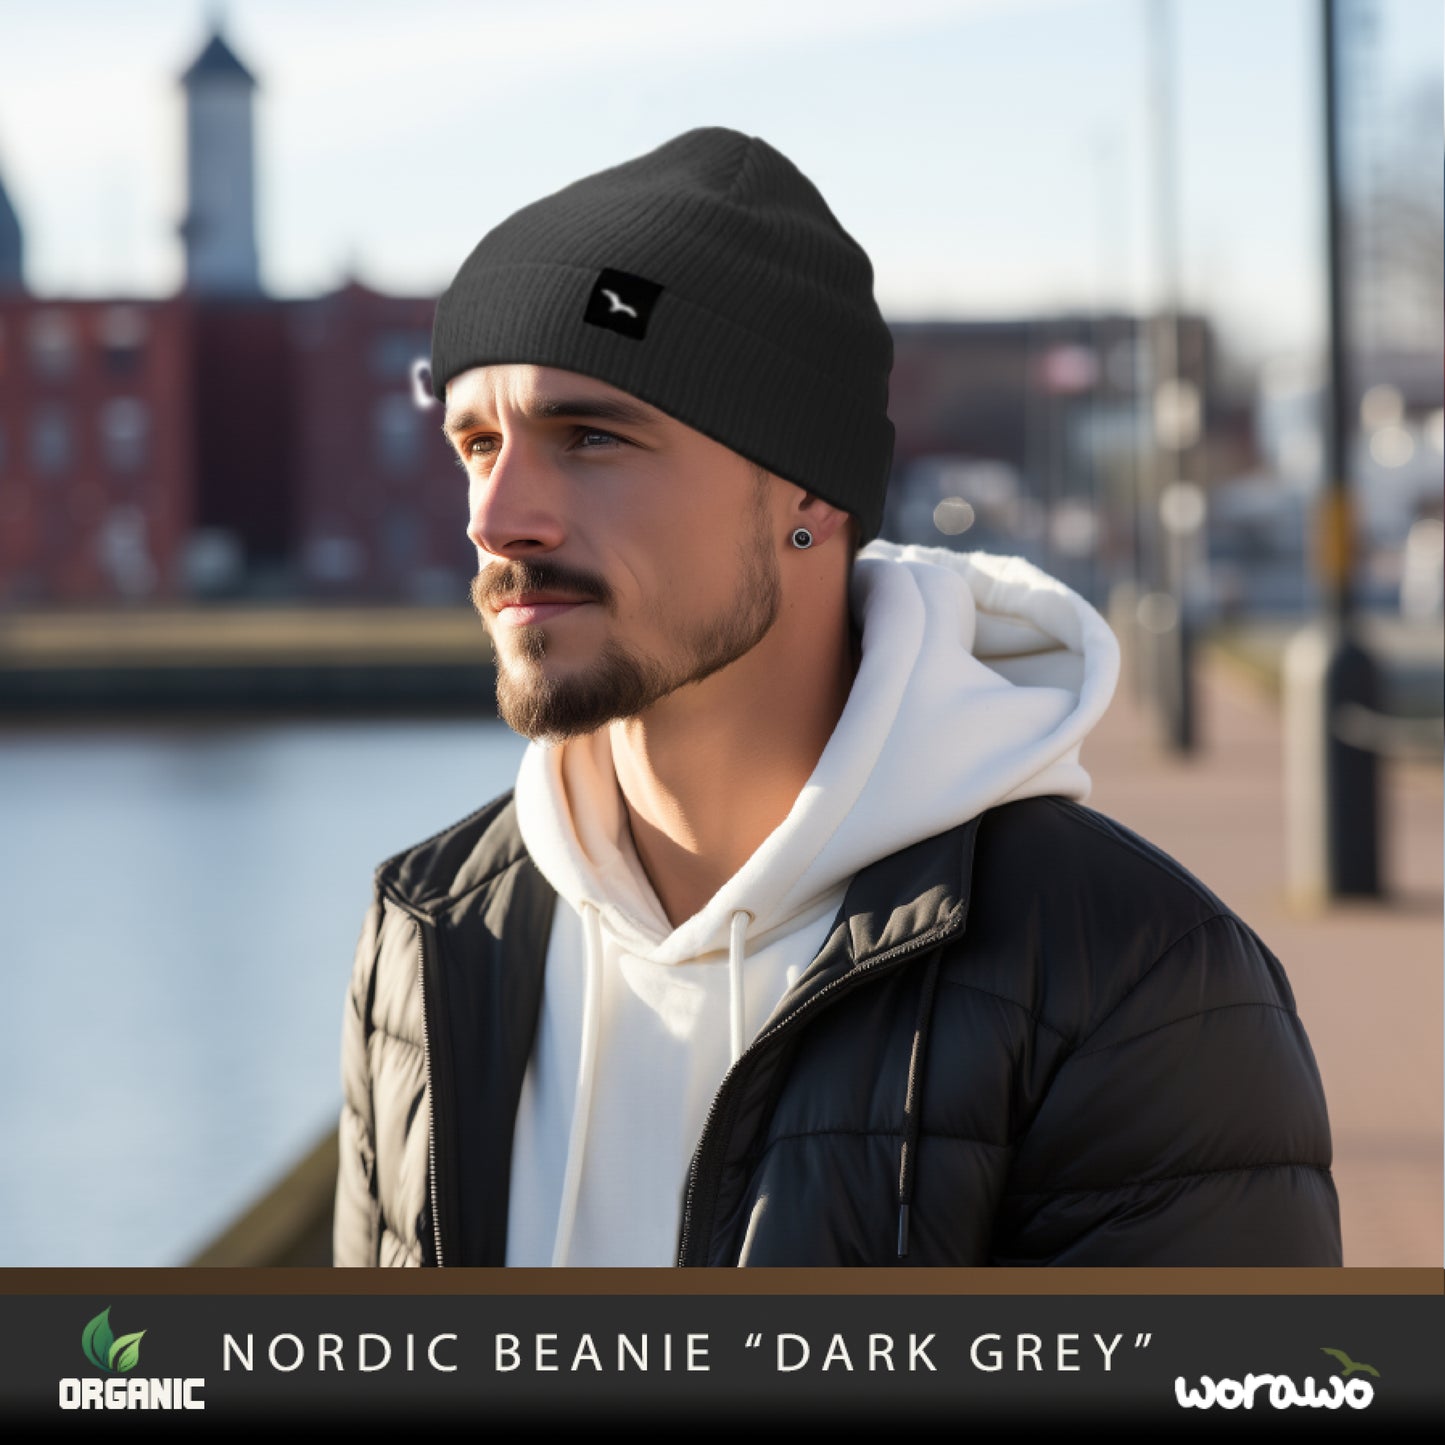 Nordic Beanie "dark gray"